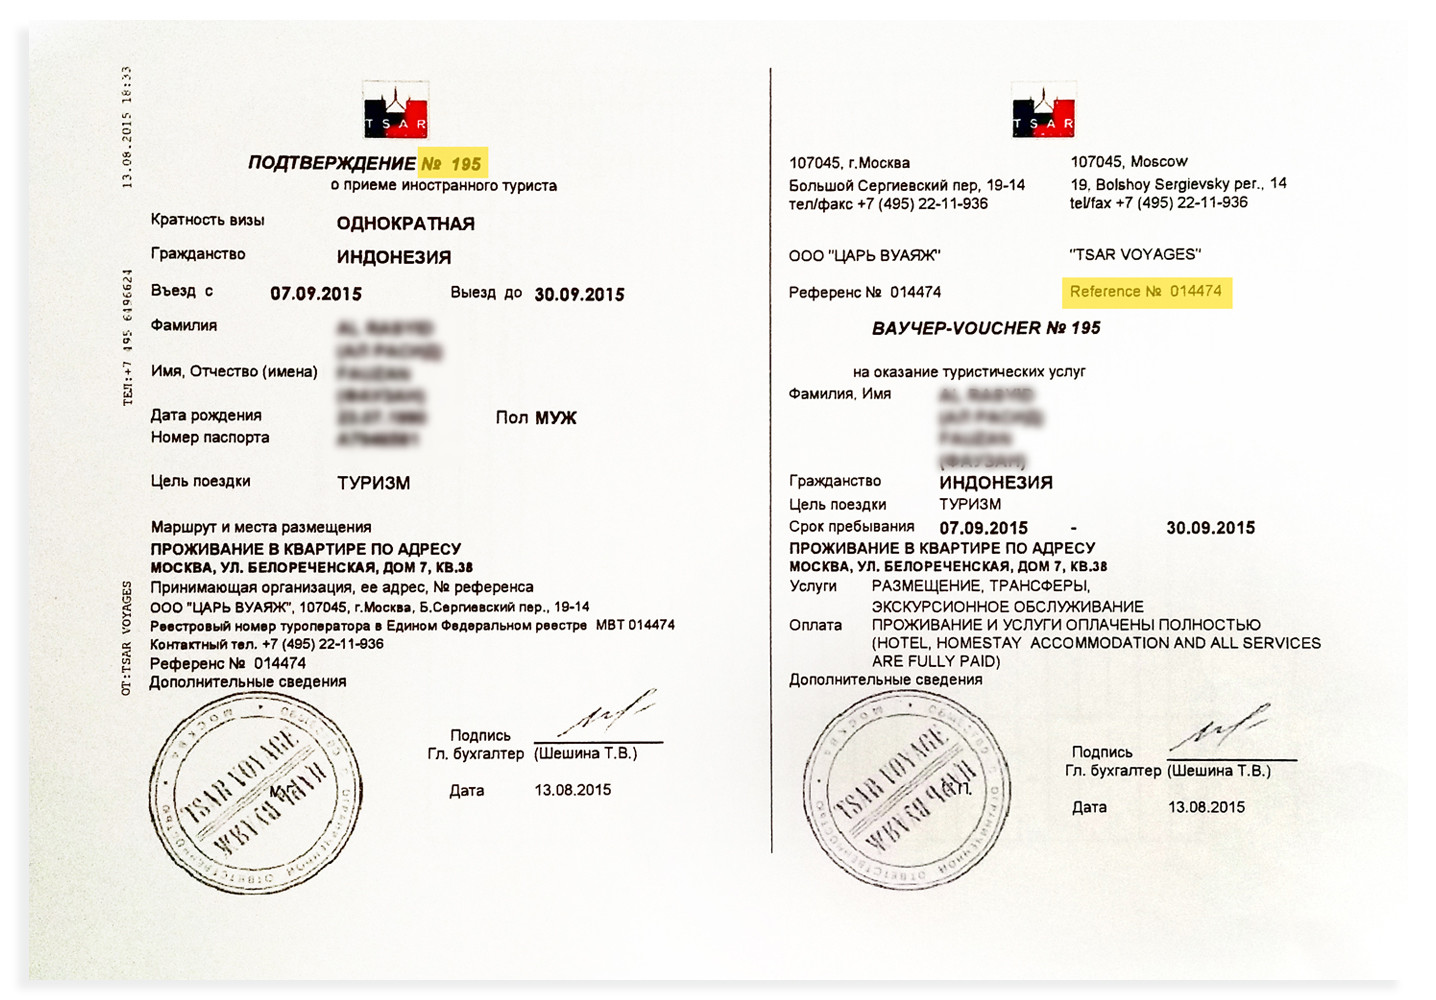 Contoh dokumen penginapan yang dikeluarkan biro perjalanan resmi di Rusia. Dokumen ini memuat kode referensi (014474) dan nomor konfirmasi (195). Pastikan bahwa dokumen yang dikeluarkan harus ditulis dalam bahasa Rusia.